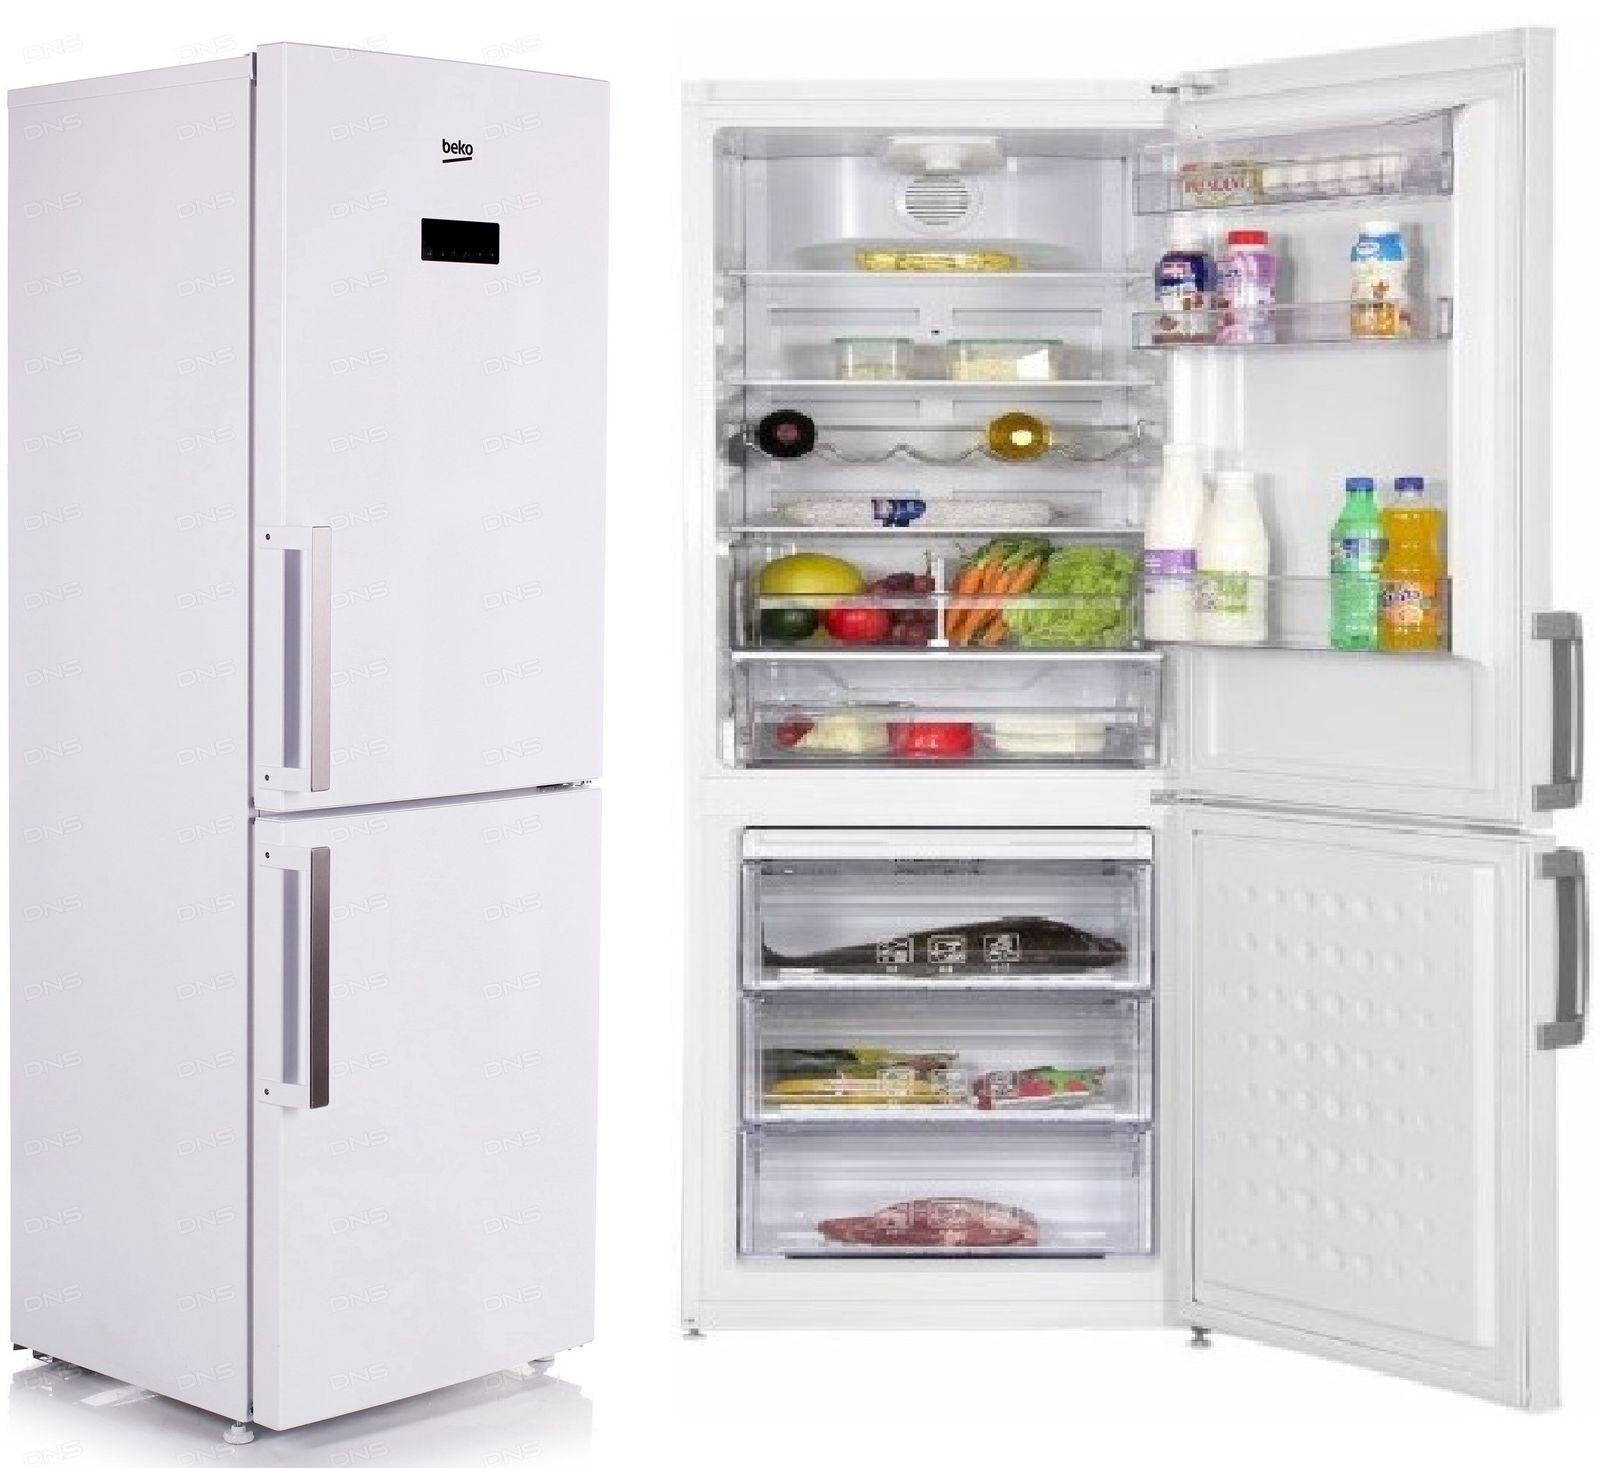 холодильник beko rcnk295e21w, купить в Красноярске холодильник beko rcnk295e21w,  купить в Красноярске дешево холодильник beko rcnk295e21w, купить в Красноярске минимальной цене холодильник beko rcnk295e21w